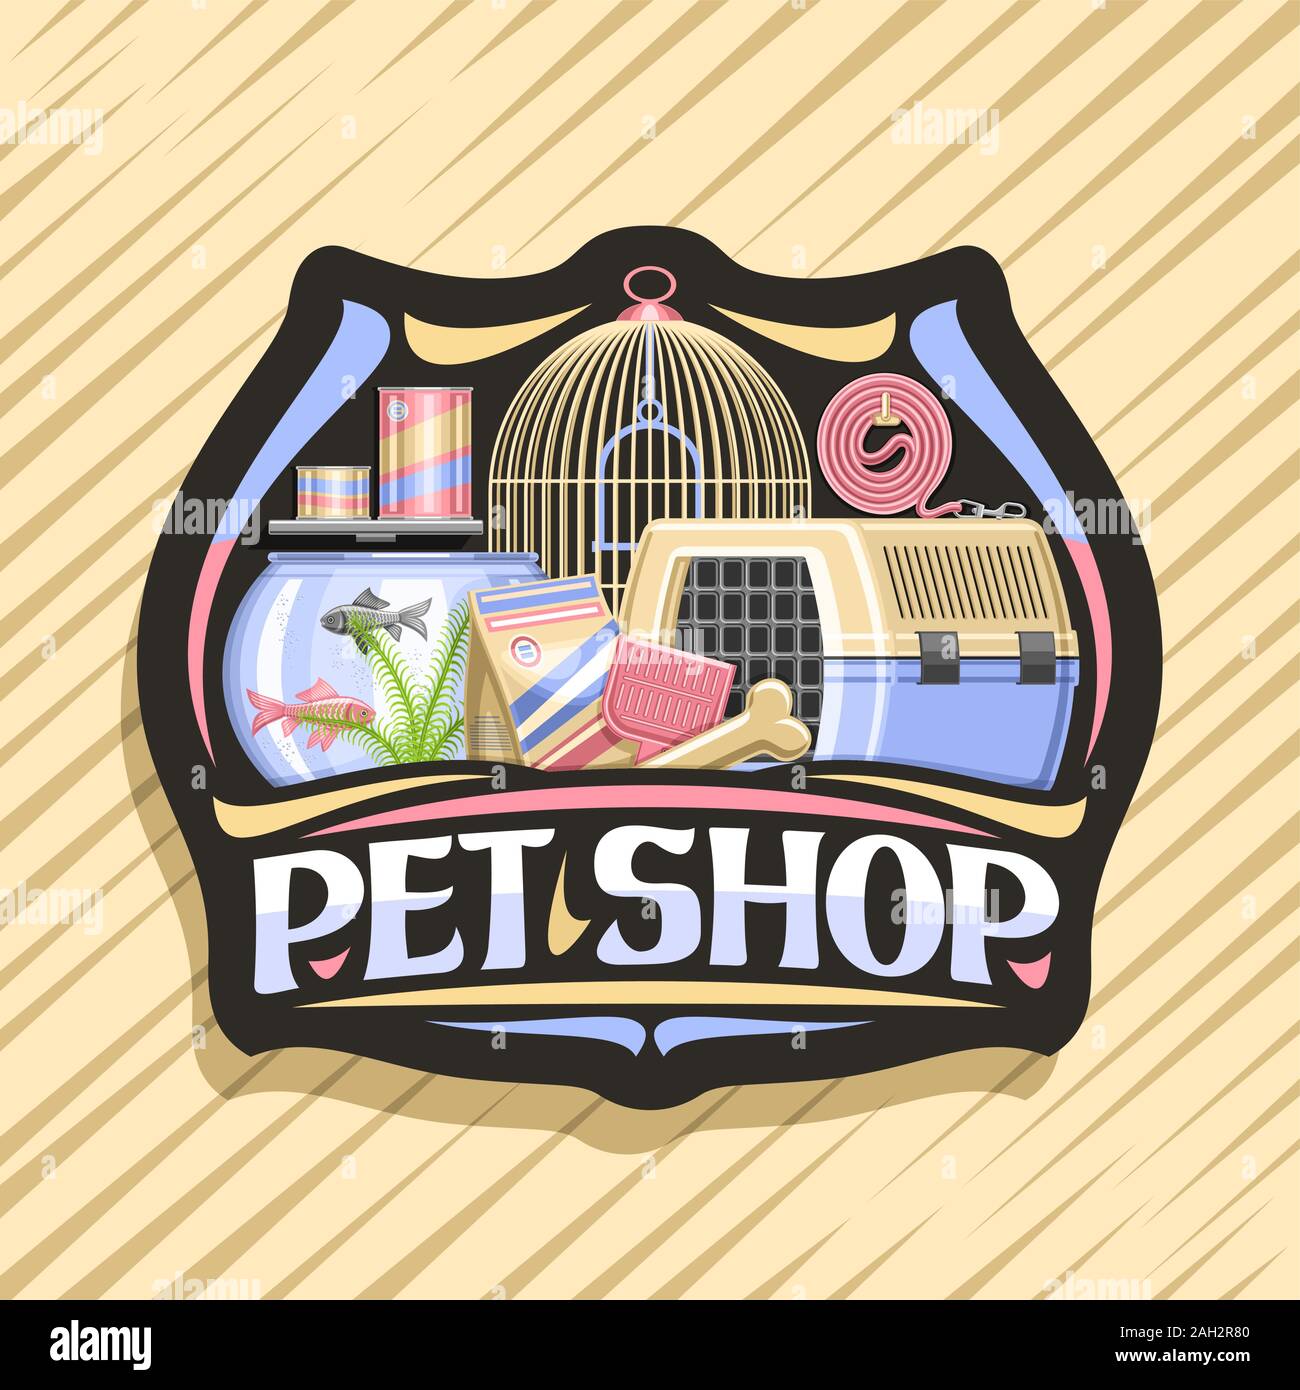 Logo Vector pour Pet Shop, badge décorative noire avec illustration de boîte de transport pour chat, plastique écope, aquarium avec poissons rouges dans l'eau et l'ondulé Illustration de Vecteur